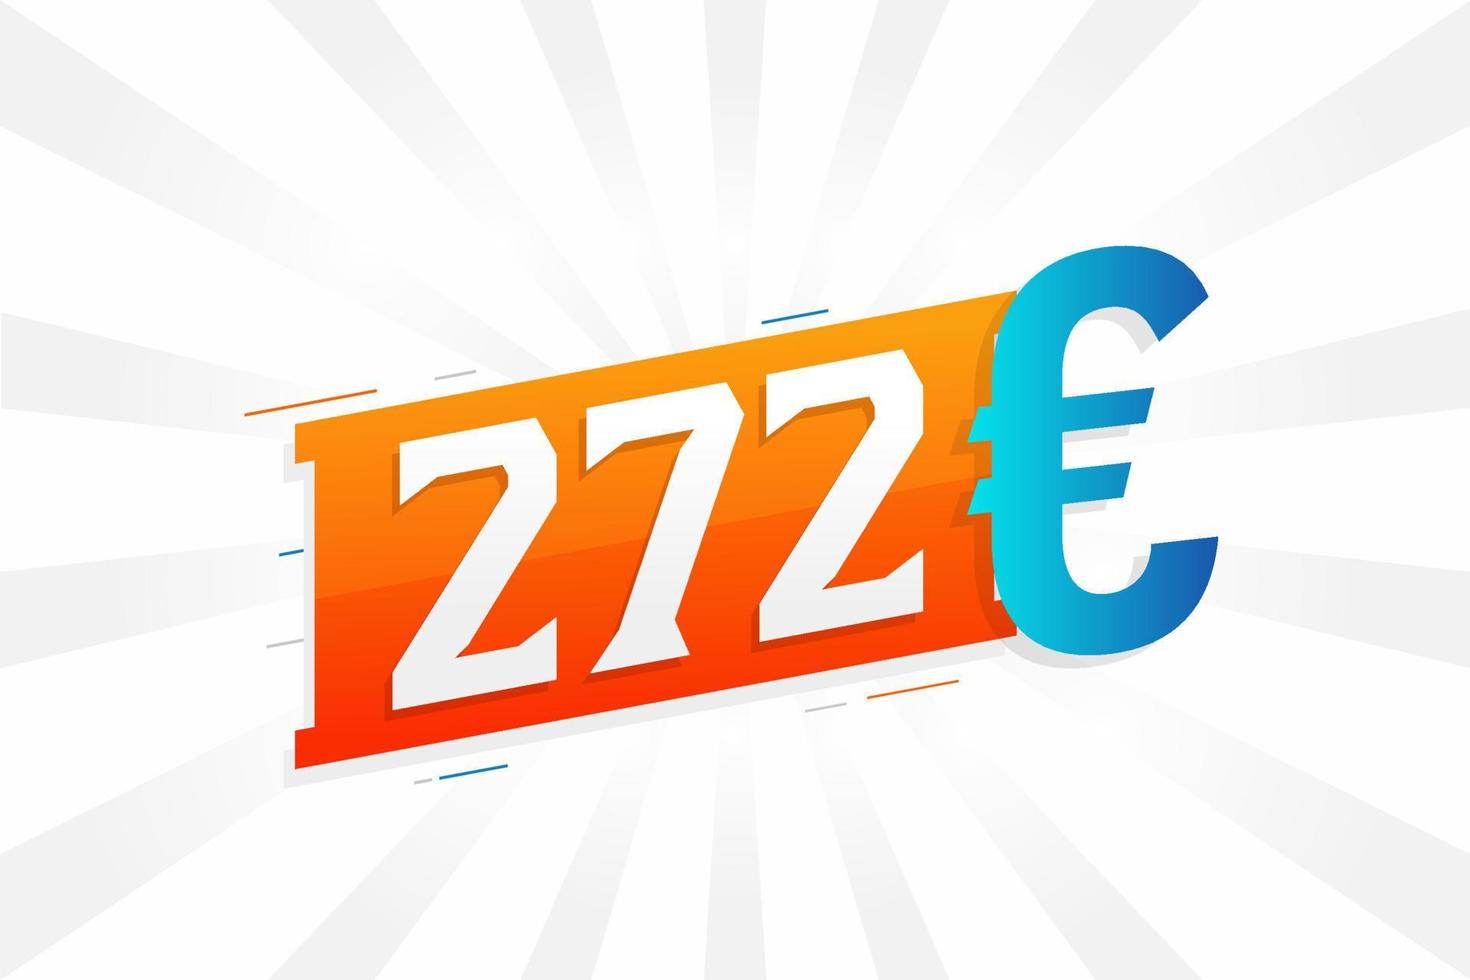 272 Euro Currency vector text symbol. 272 Euro European Union Money stock vector